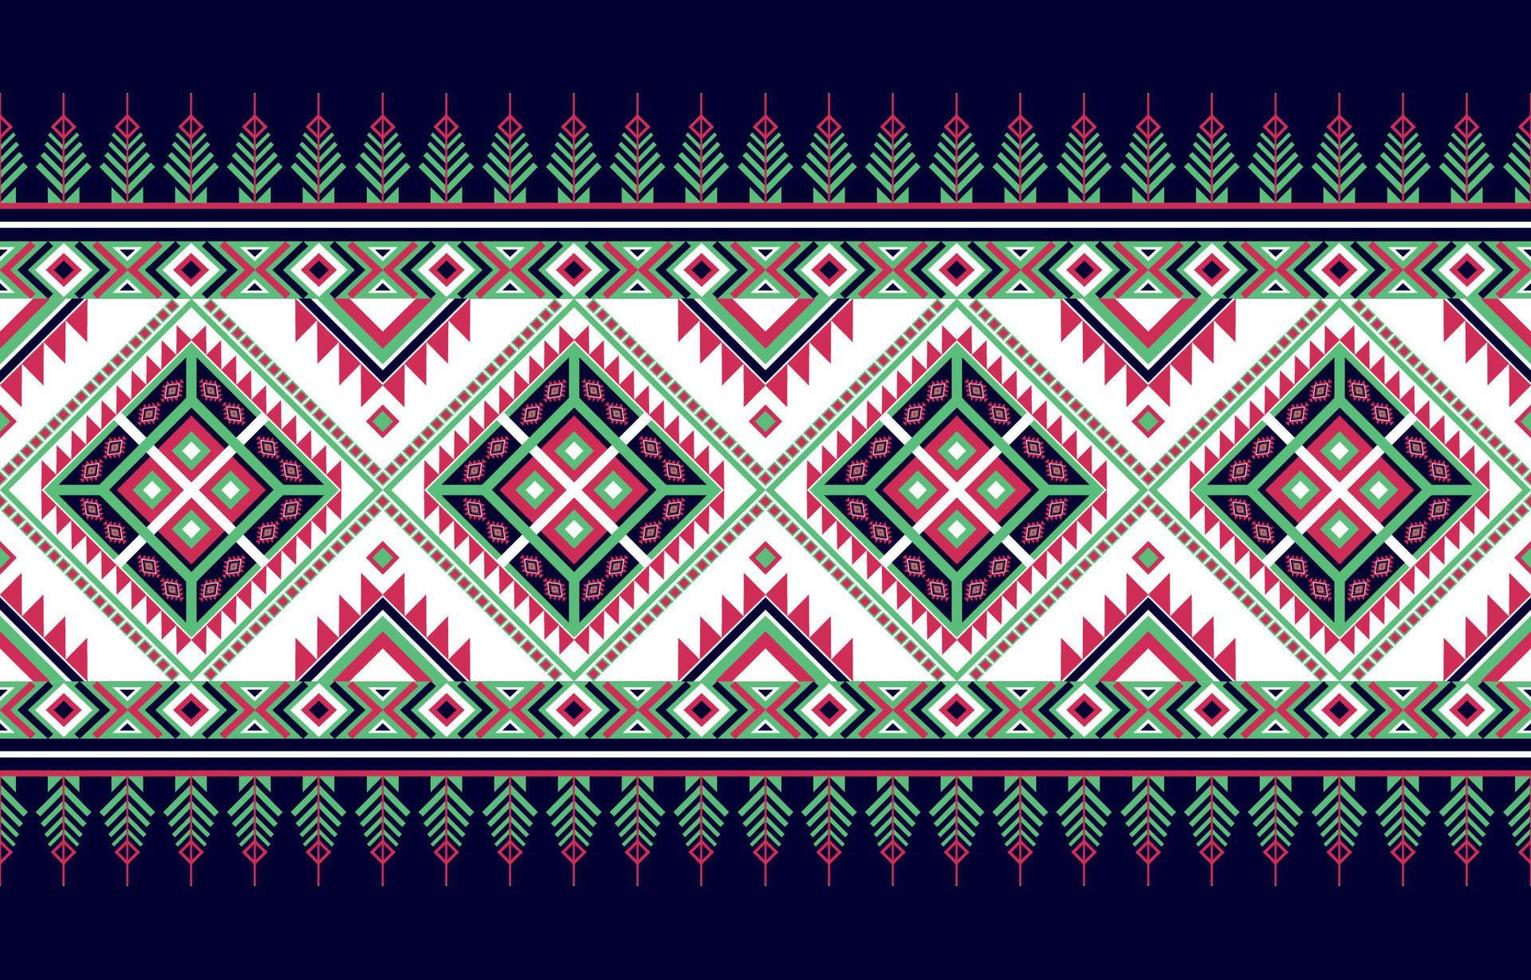 diseño tradicional de patrón oriental étnico geométrico para fondo, alfombra, papel pintado, ropa, envoltura, batic, tela, ilustración vectorial. Estilo de bordado. vector